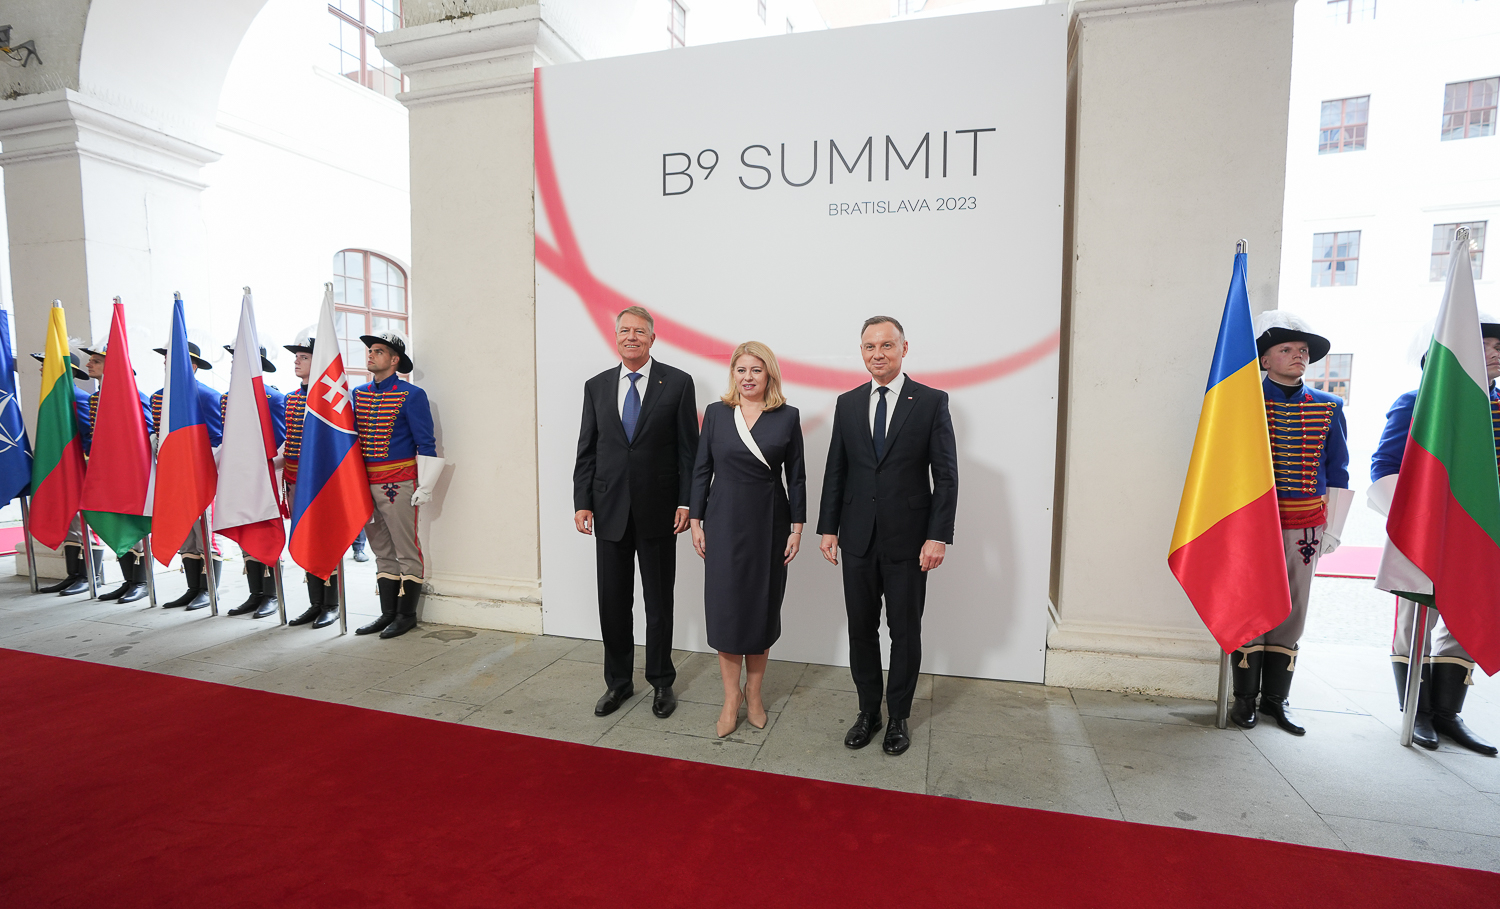 Summitul B9 de la Bratislava (foto: Facebook)